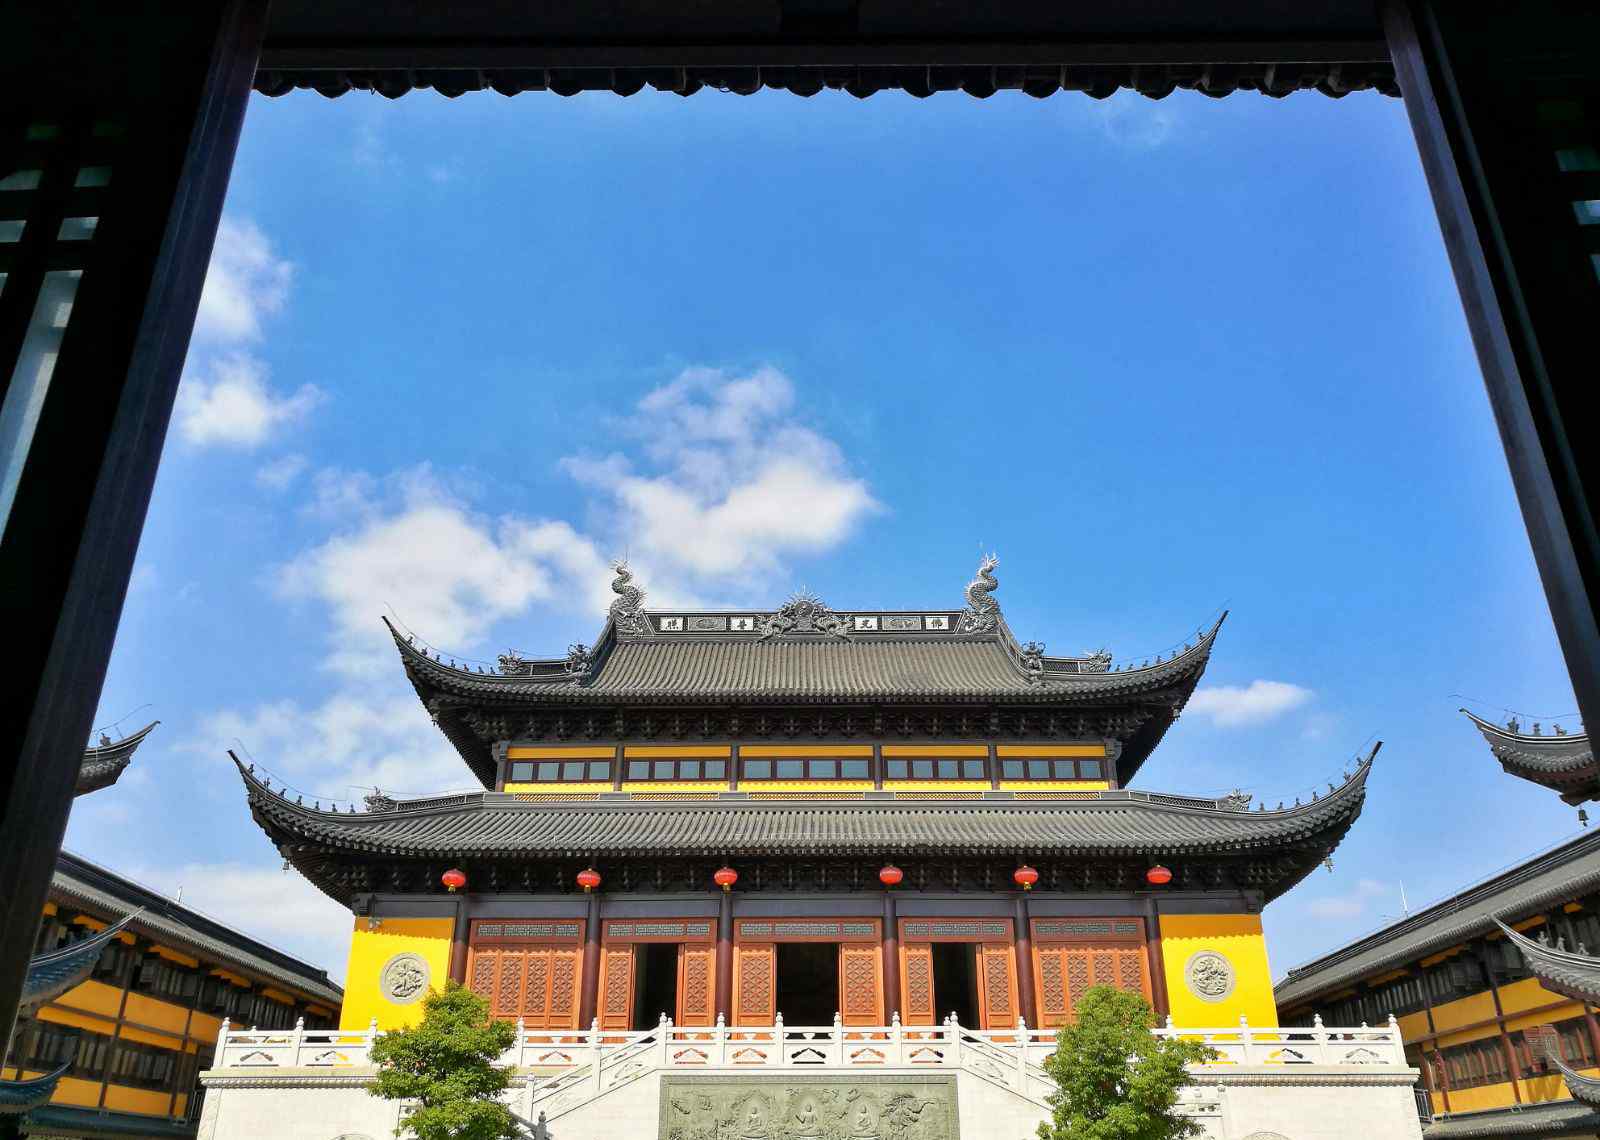 上海长寿禅寺 上海浦江镇一日游